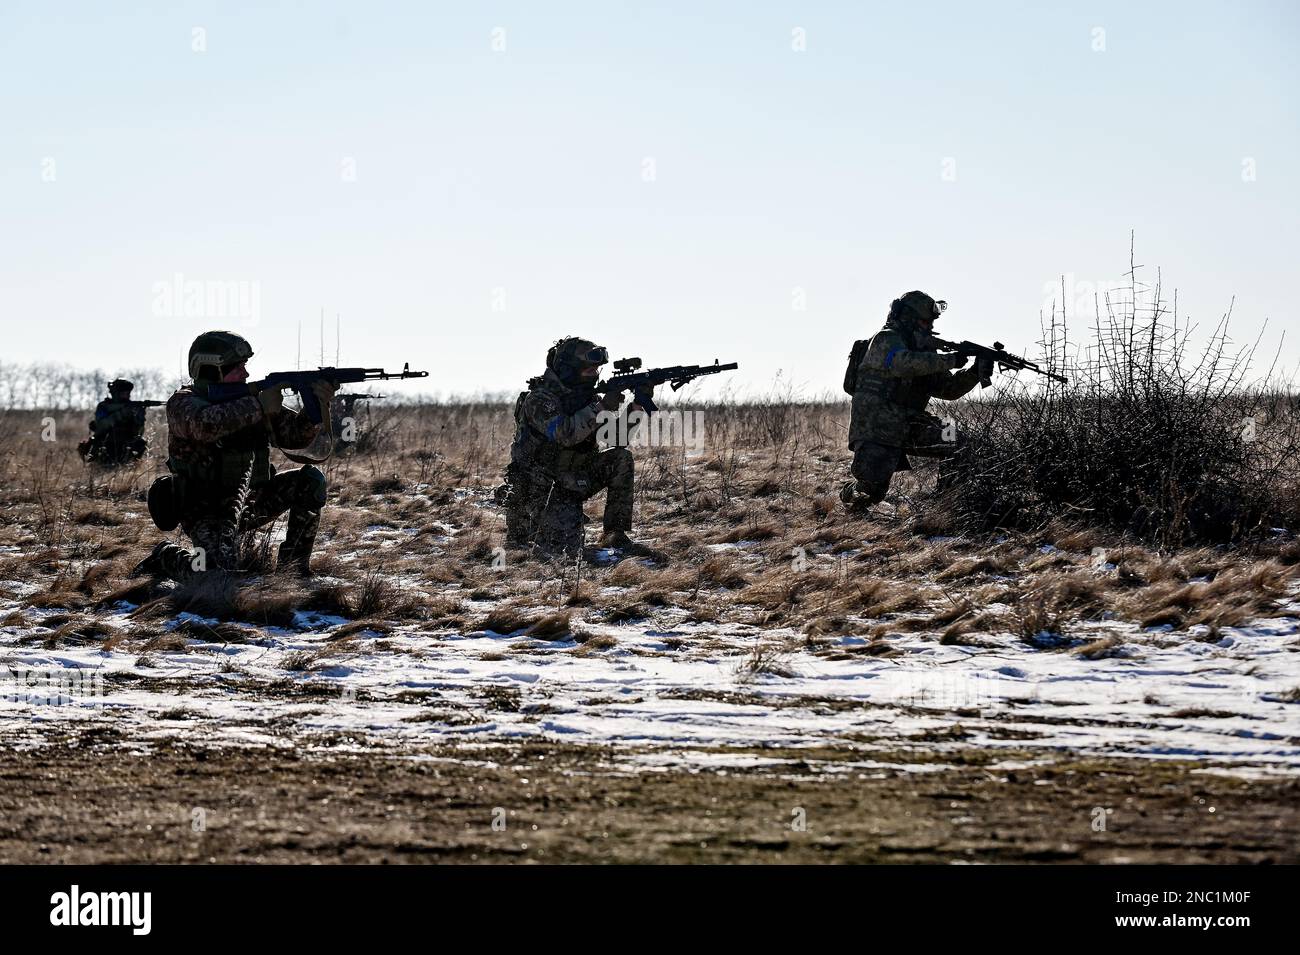 REGIÓN DE ZAPORIZHZHIA, UCRANIA - 8 DE FEBRERO de 2023 - Los soldados dominan la posición de tiro de rodillas durante la sesión de entrenamiento de tiradores ucranianos y. Foto de stock